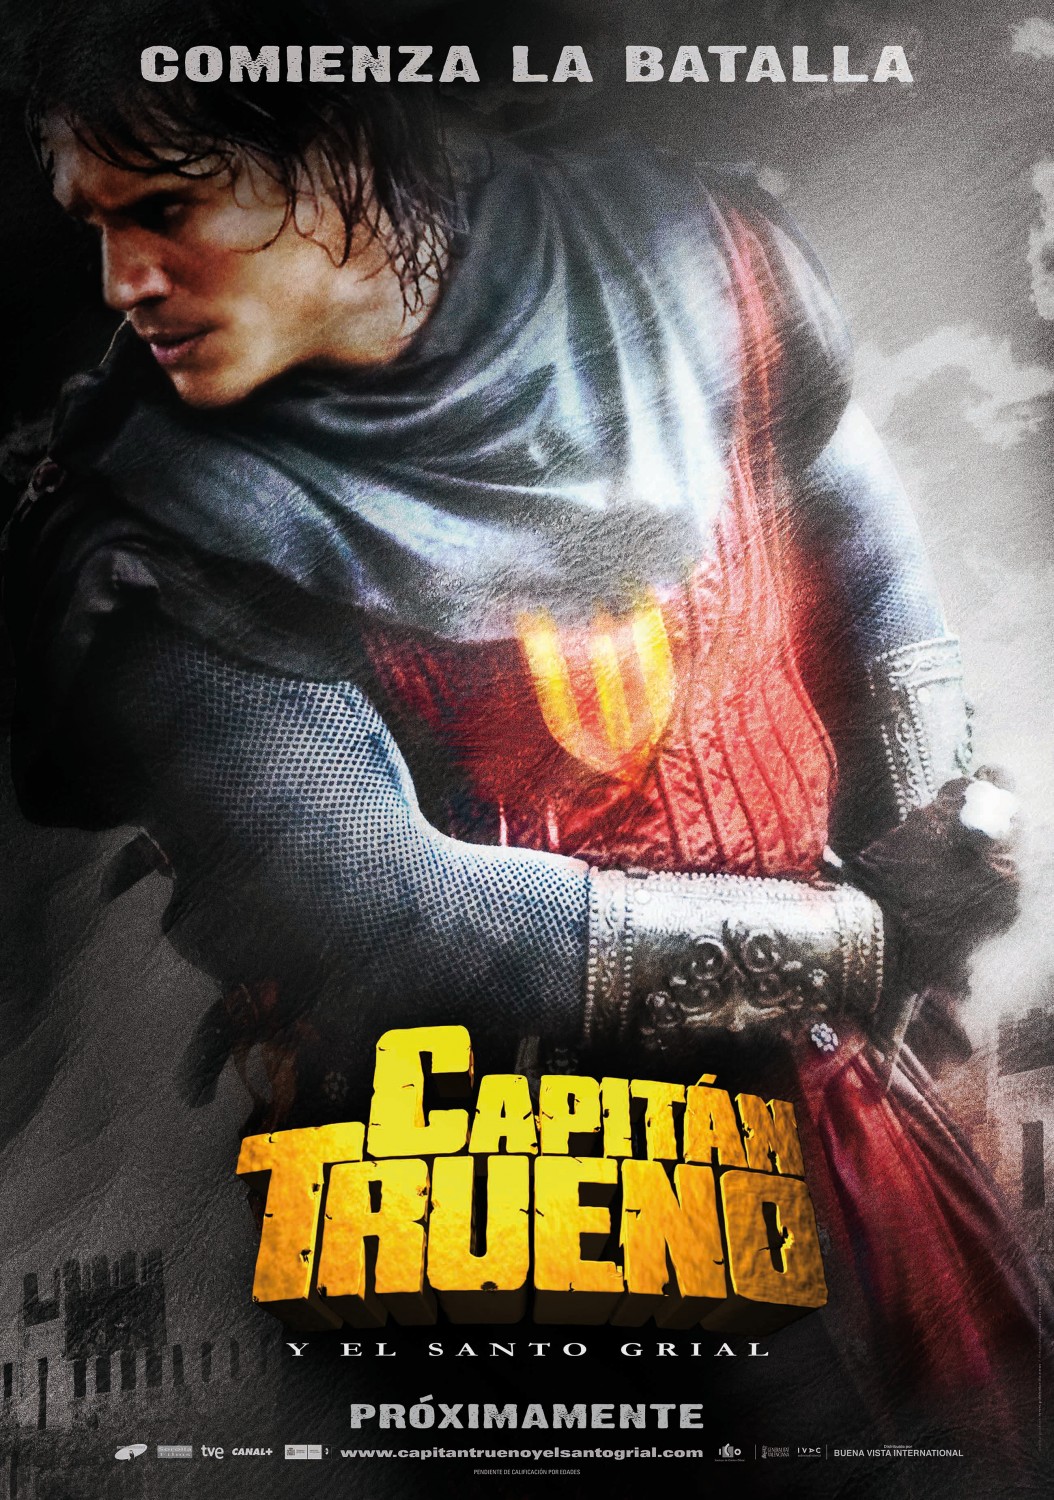 Extra Large Movie Poster Image for El Capitán Trueno y el Santo Grial (#2 of 2)